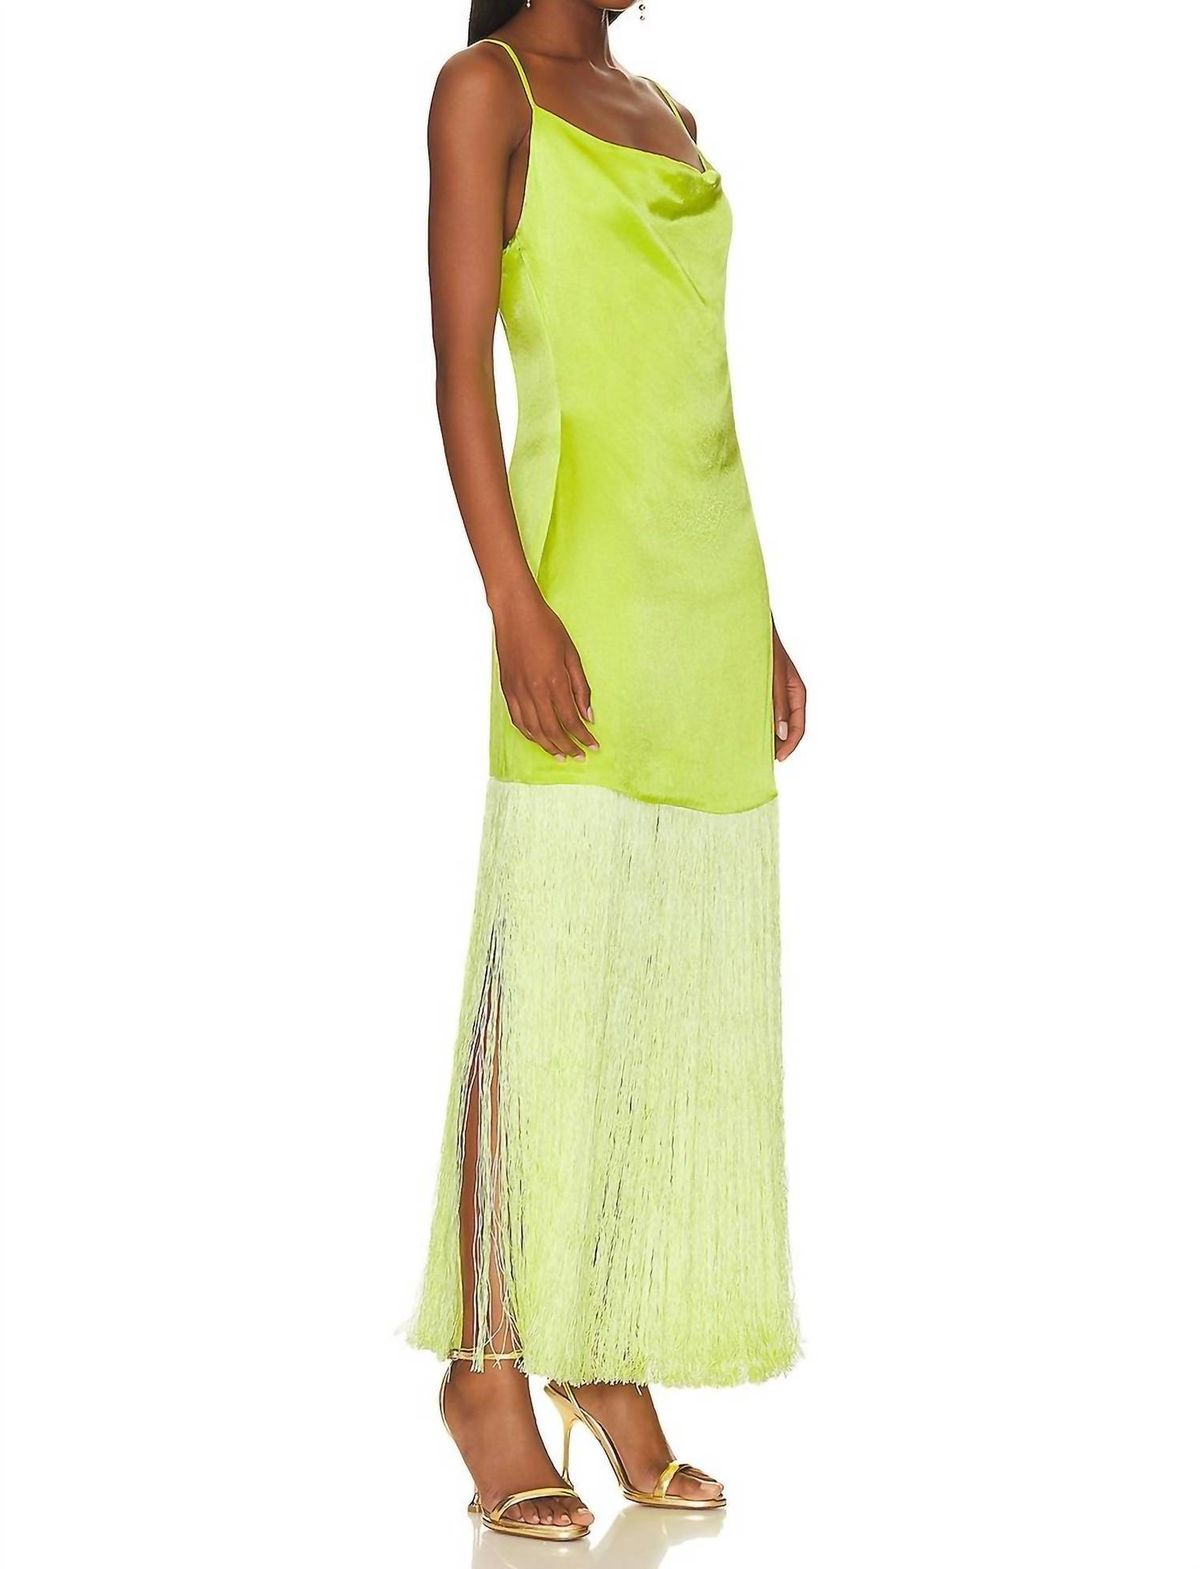 Style 1-1557163402-3905 ELLIATT Size XS Yellow Side Slit Dress on Queenly